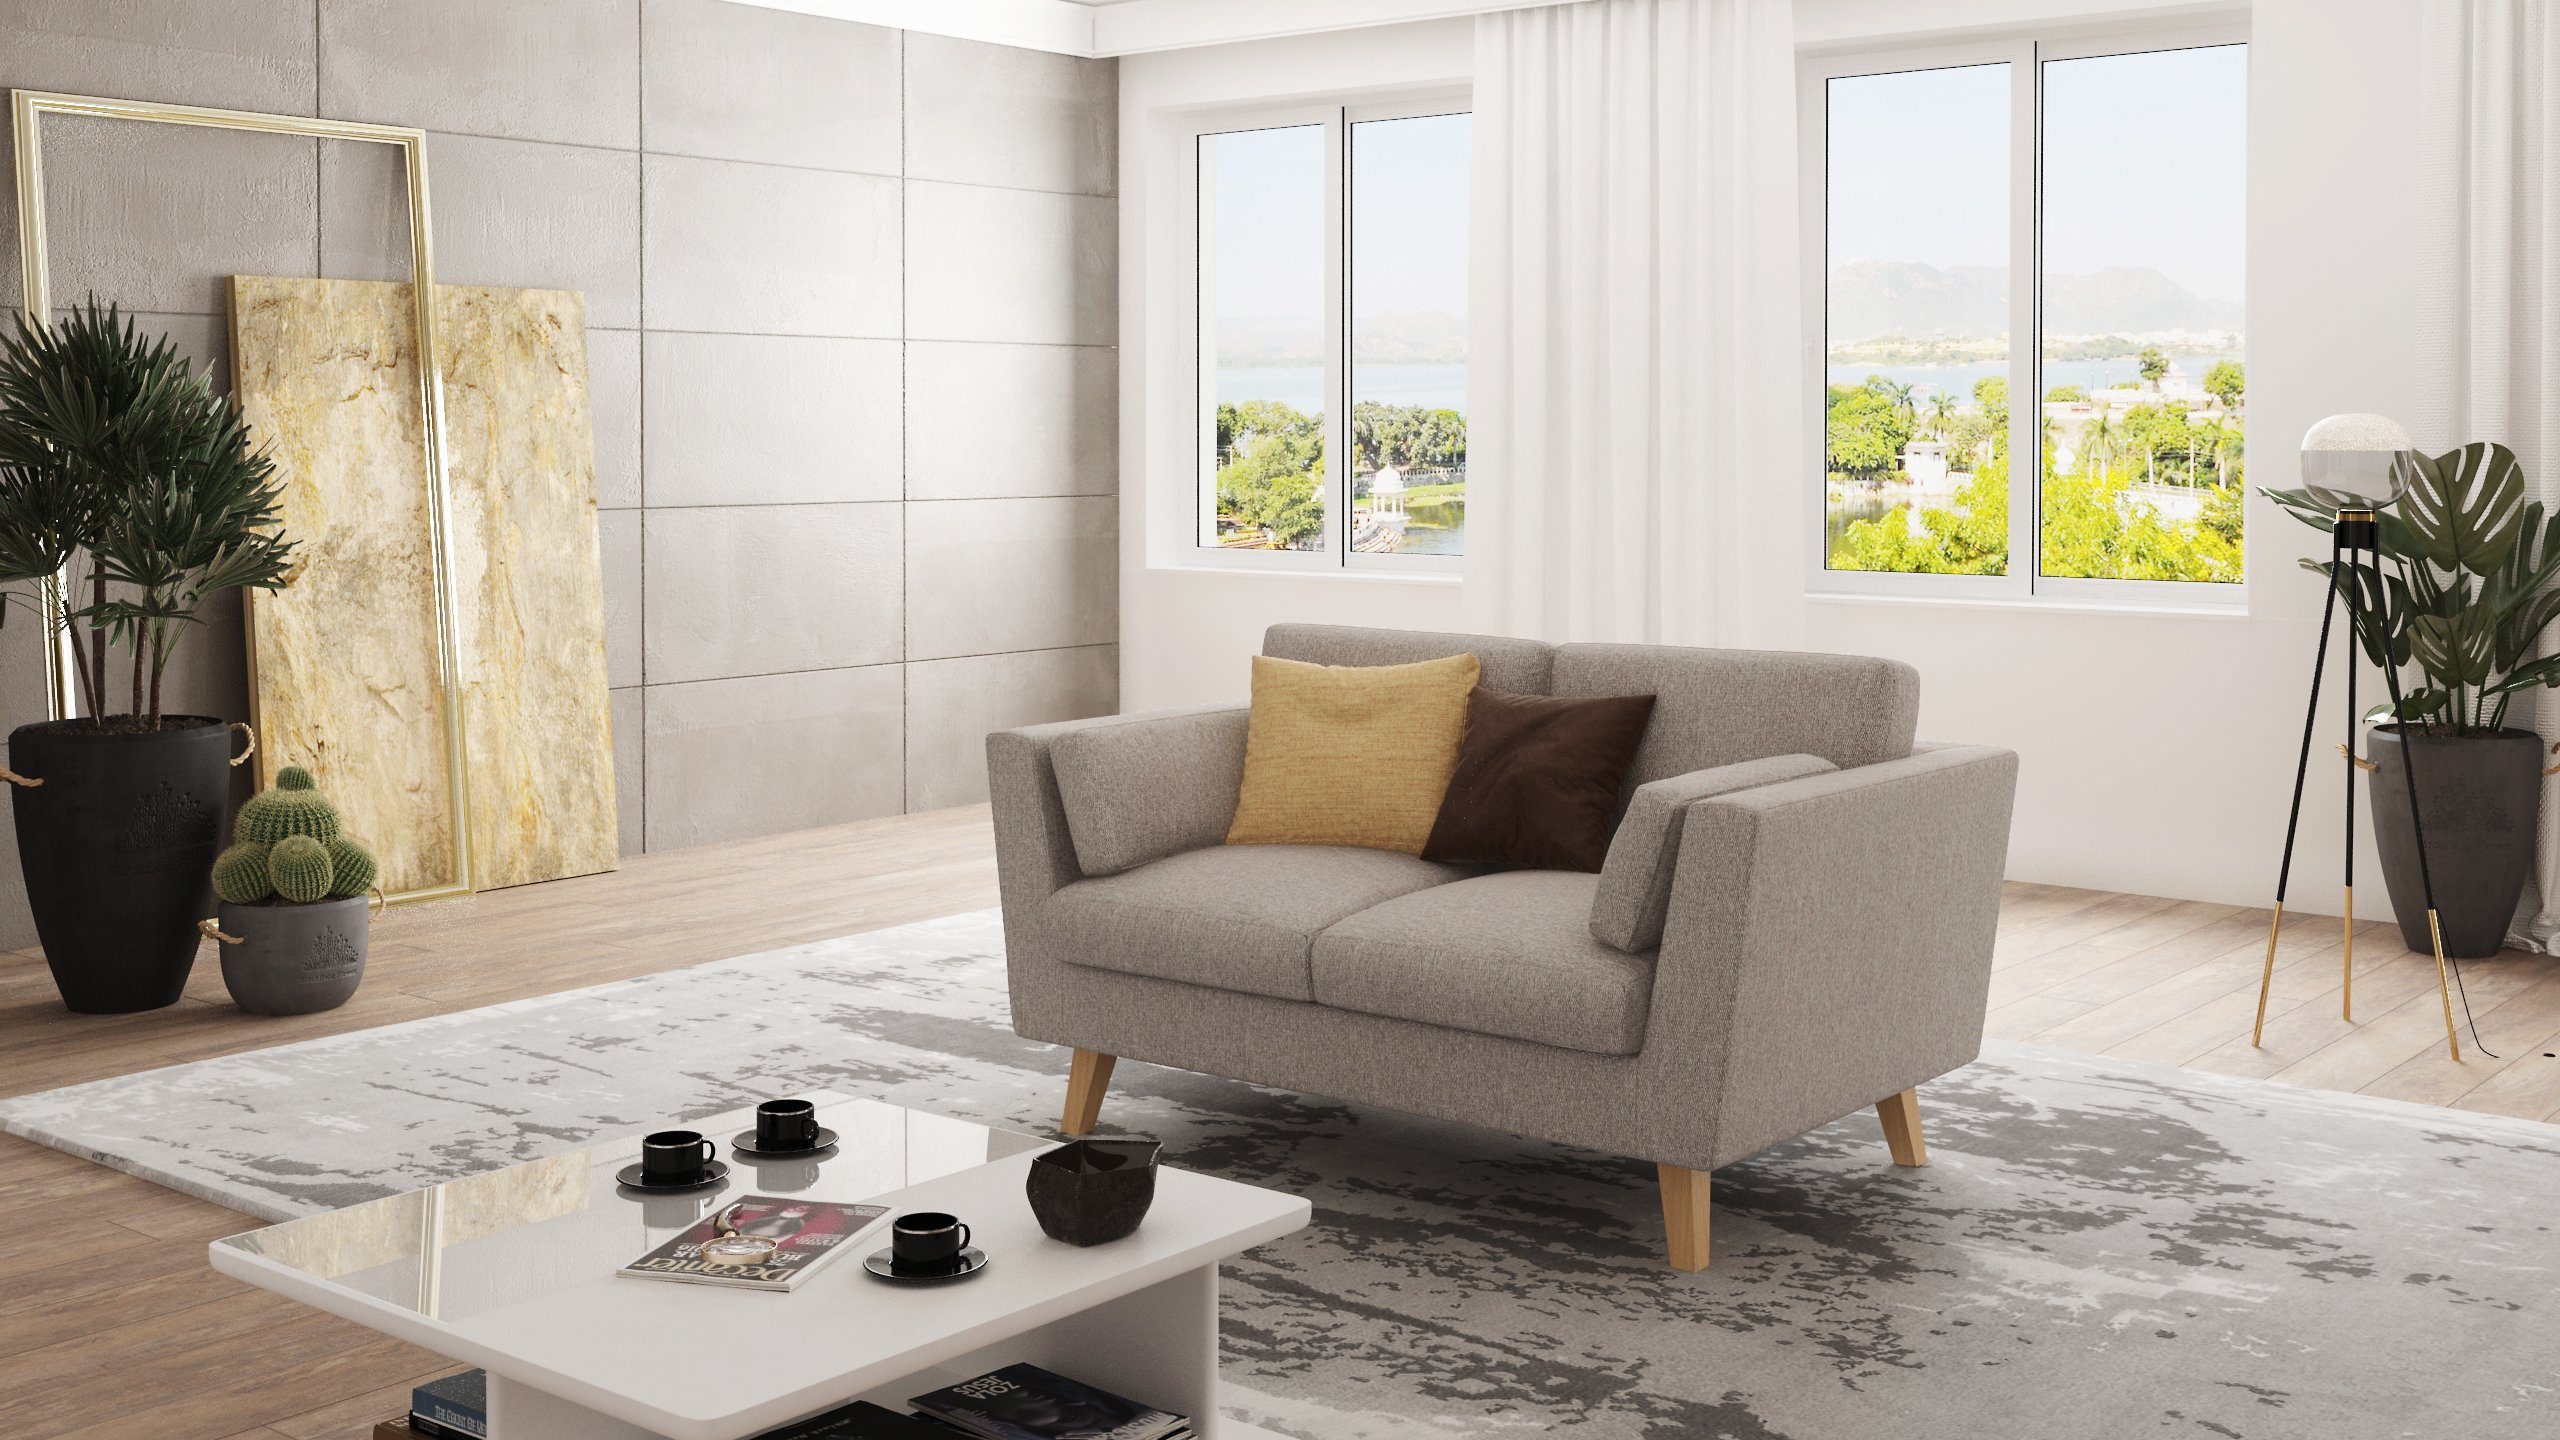 Wellenfederung mit Angeles Möbel 2-Sitzer Dunkelbeige im Sofa S-Style Design, skandinavischen